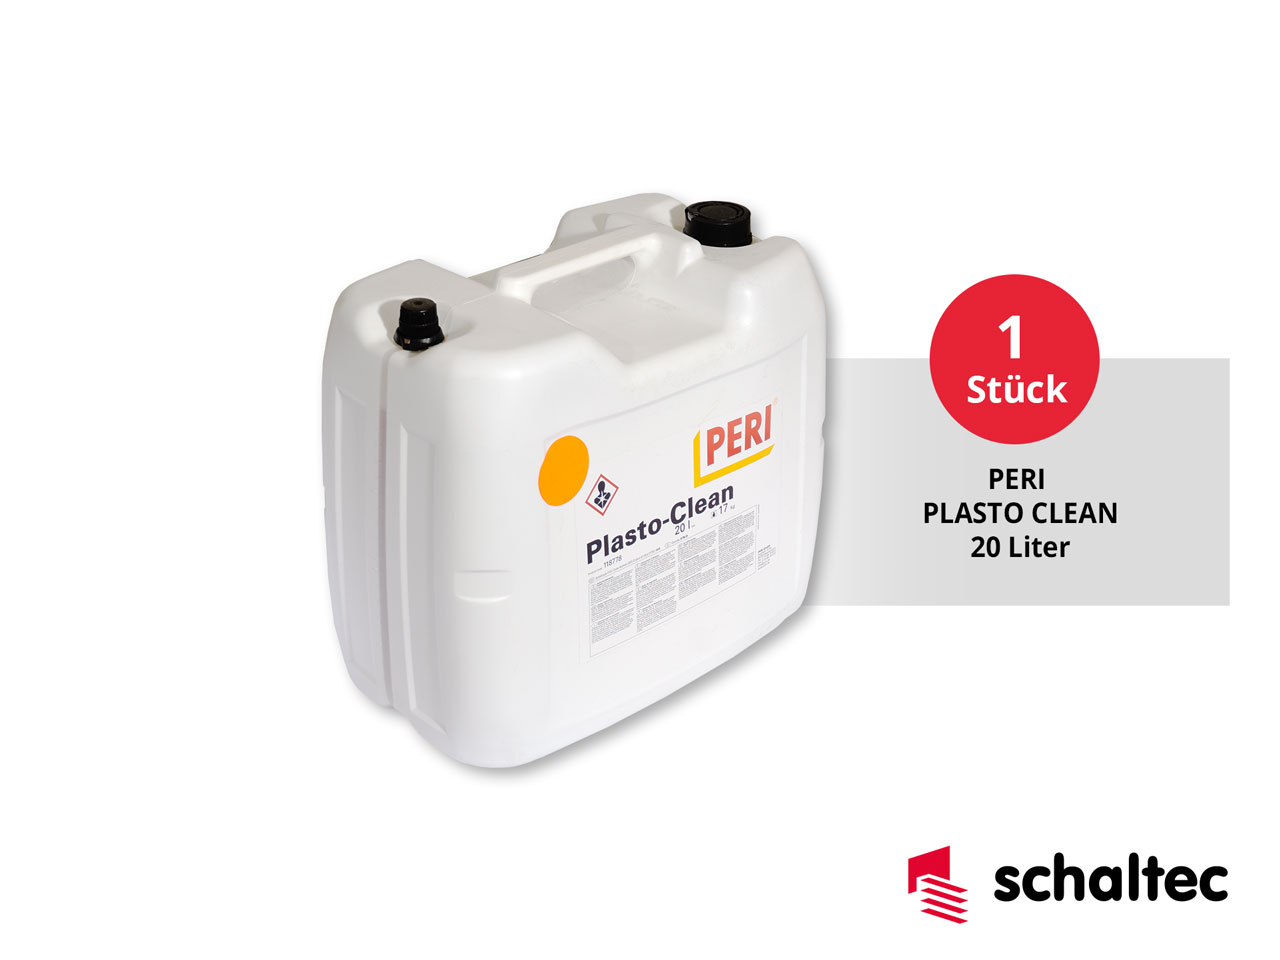 20-liter-plasto-clean-schaltec-peri-duo-aktionspaket-1280x960px